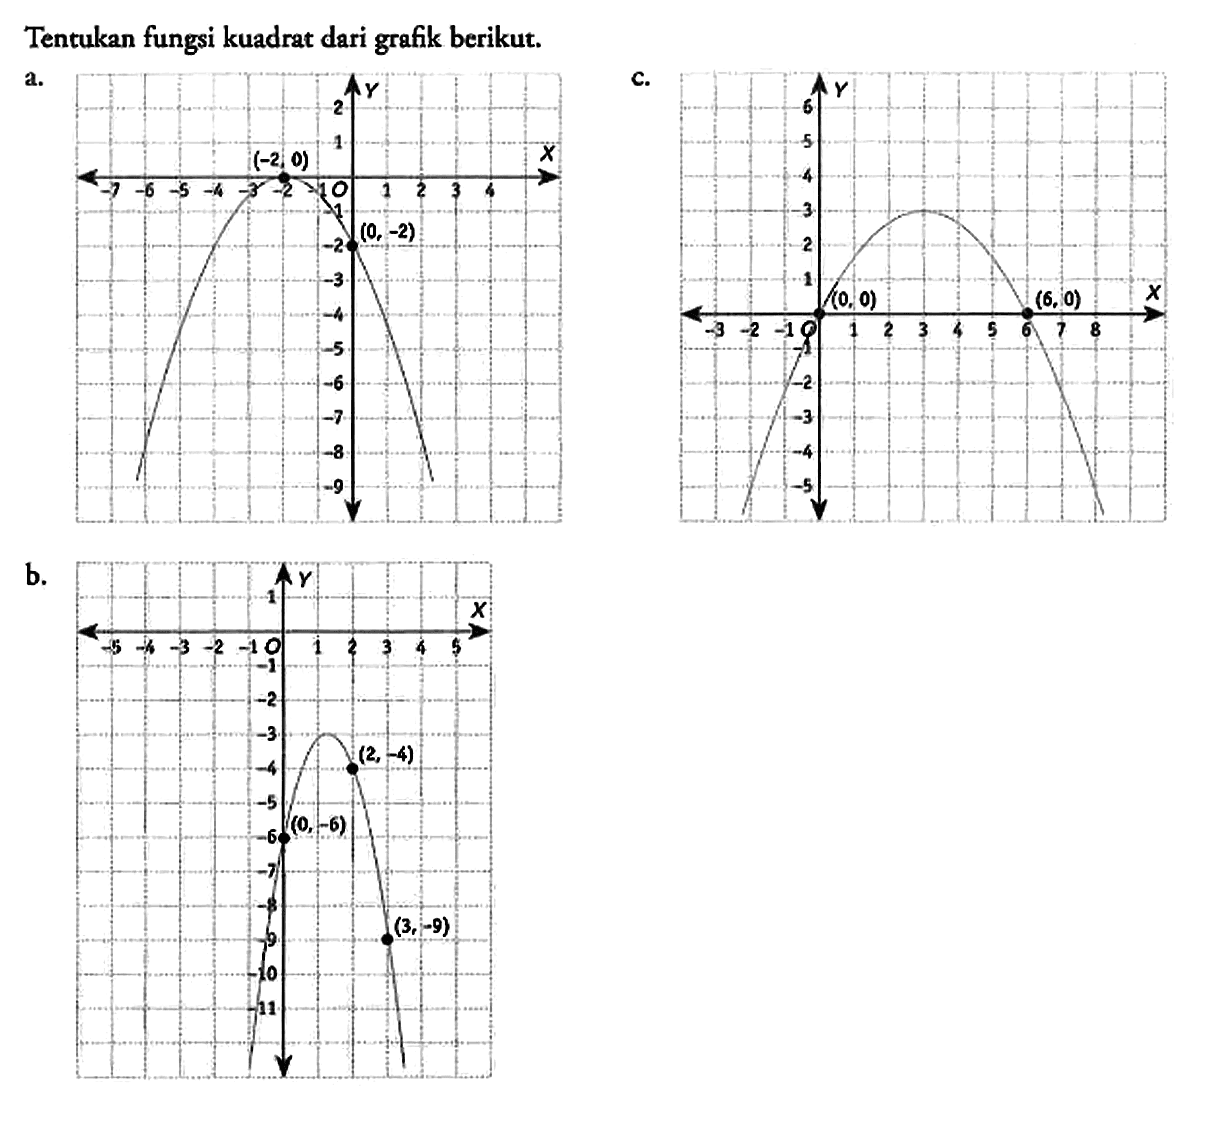 Tentukan fungsi kuadrat dari grafik berikut.
a. Y 2 1 -7 -6 -5 -4 -3 -2 (-2,0) -1 0 1 2 3 4 X -1 -2 (0,-2) -3 -4 -5 -6 -7 -8 -9 
c. Y 6 5 4 3 2 1 -3 -2 -1 0 (0,0) 1 2 3 4 5 6 (6,0) 7 8 X -1 -2 -3 -4 -5 
b. Y 1 -5 -4 -3 -2 -1 0 1 2 3 4 5 -1 -2 -3 -4 (2,-4) -5 -6 (0,-6) -7 -8 -9 (3,-9) -10 -11  